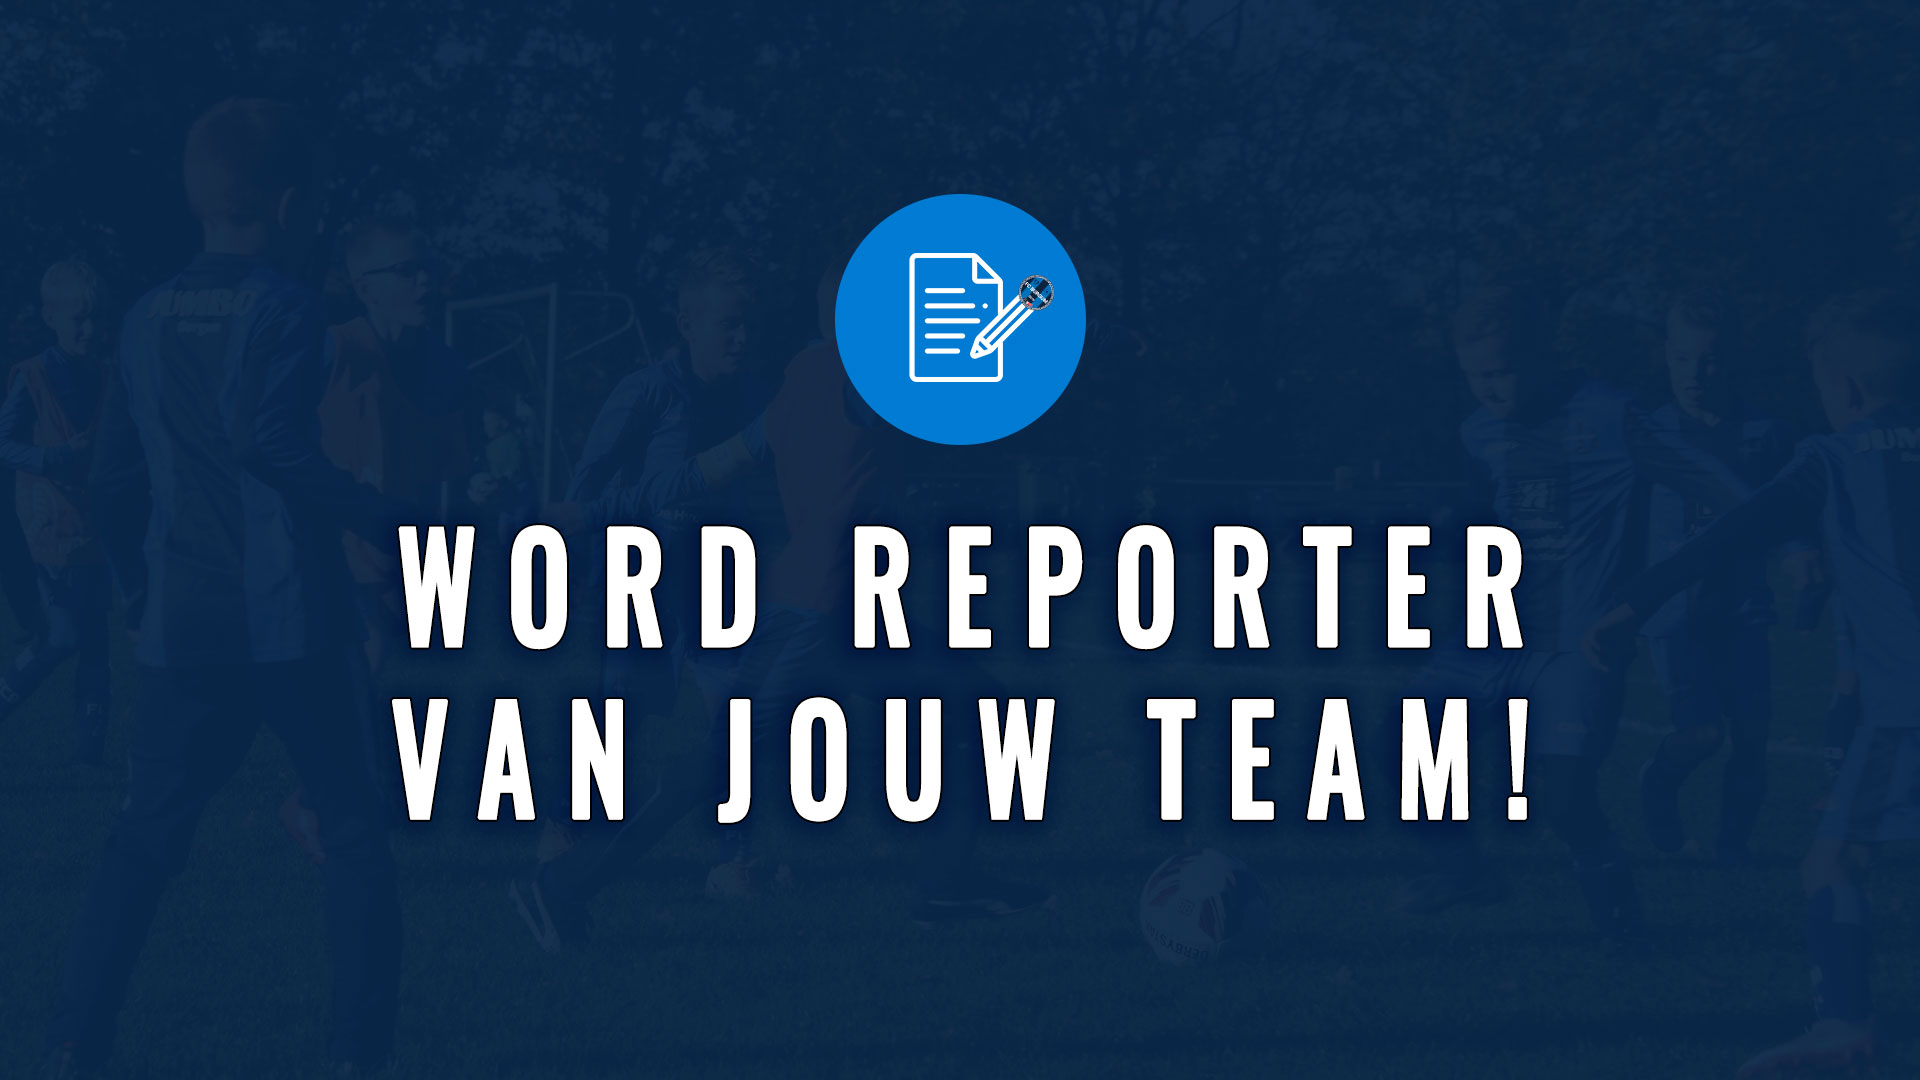 WORD REPORTER VAN JOUW TEAM!